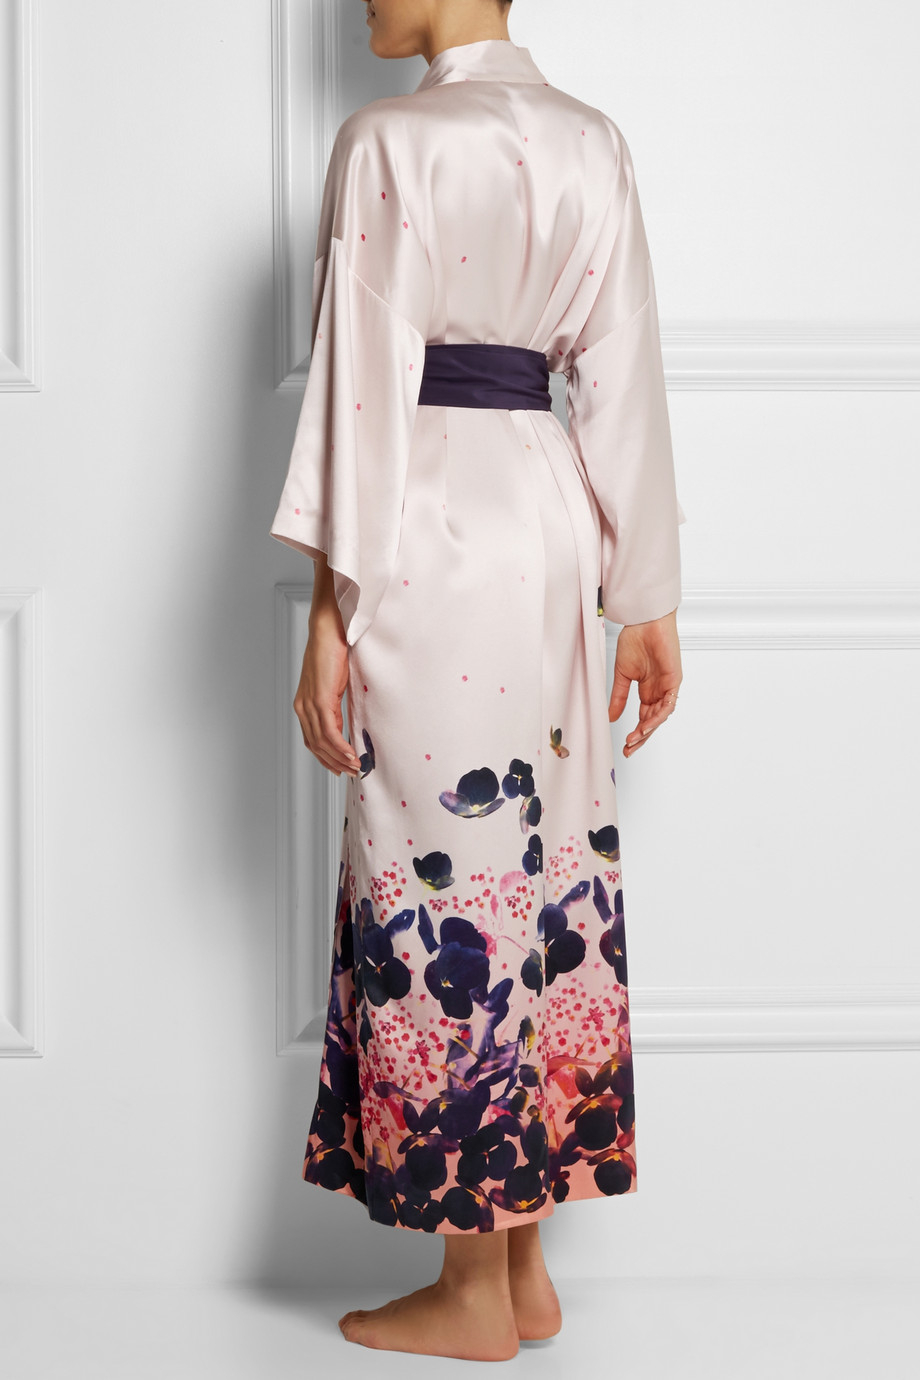 Lyst - Olivia Von Halle Queenie Misora Printed Silk-Satin Robe in Pink